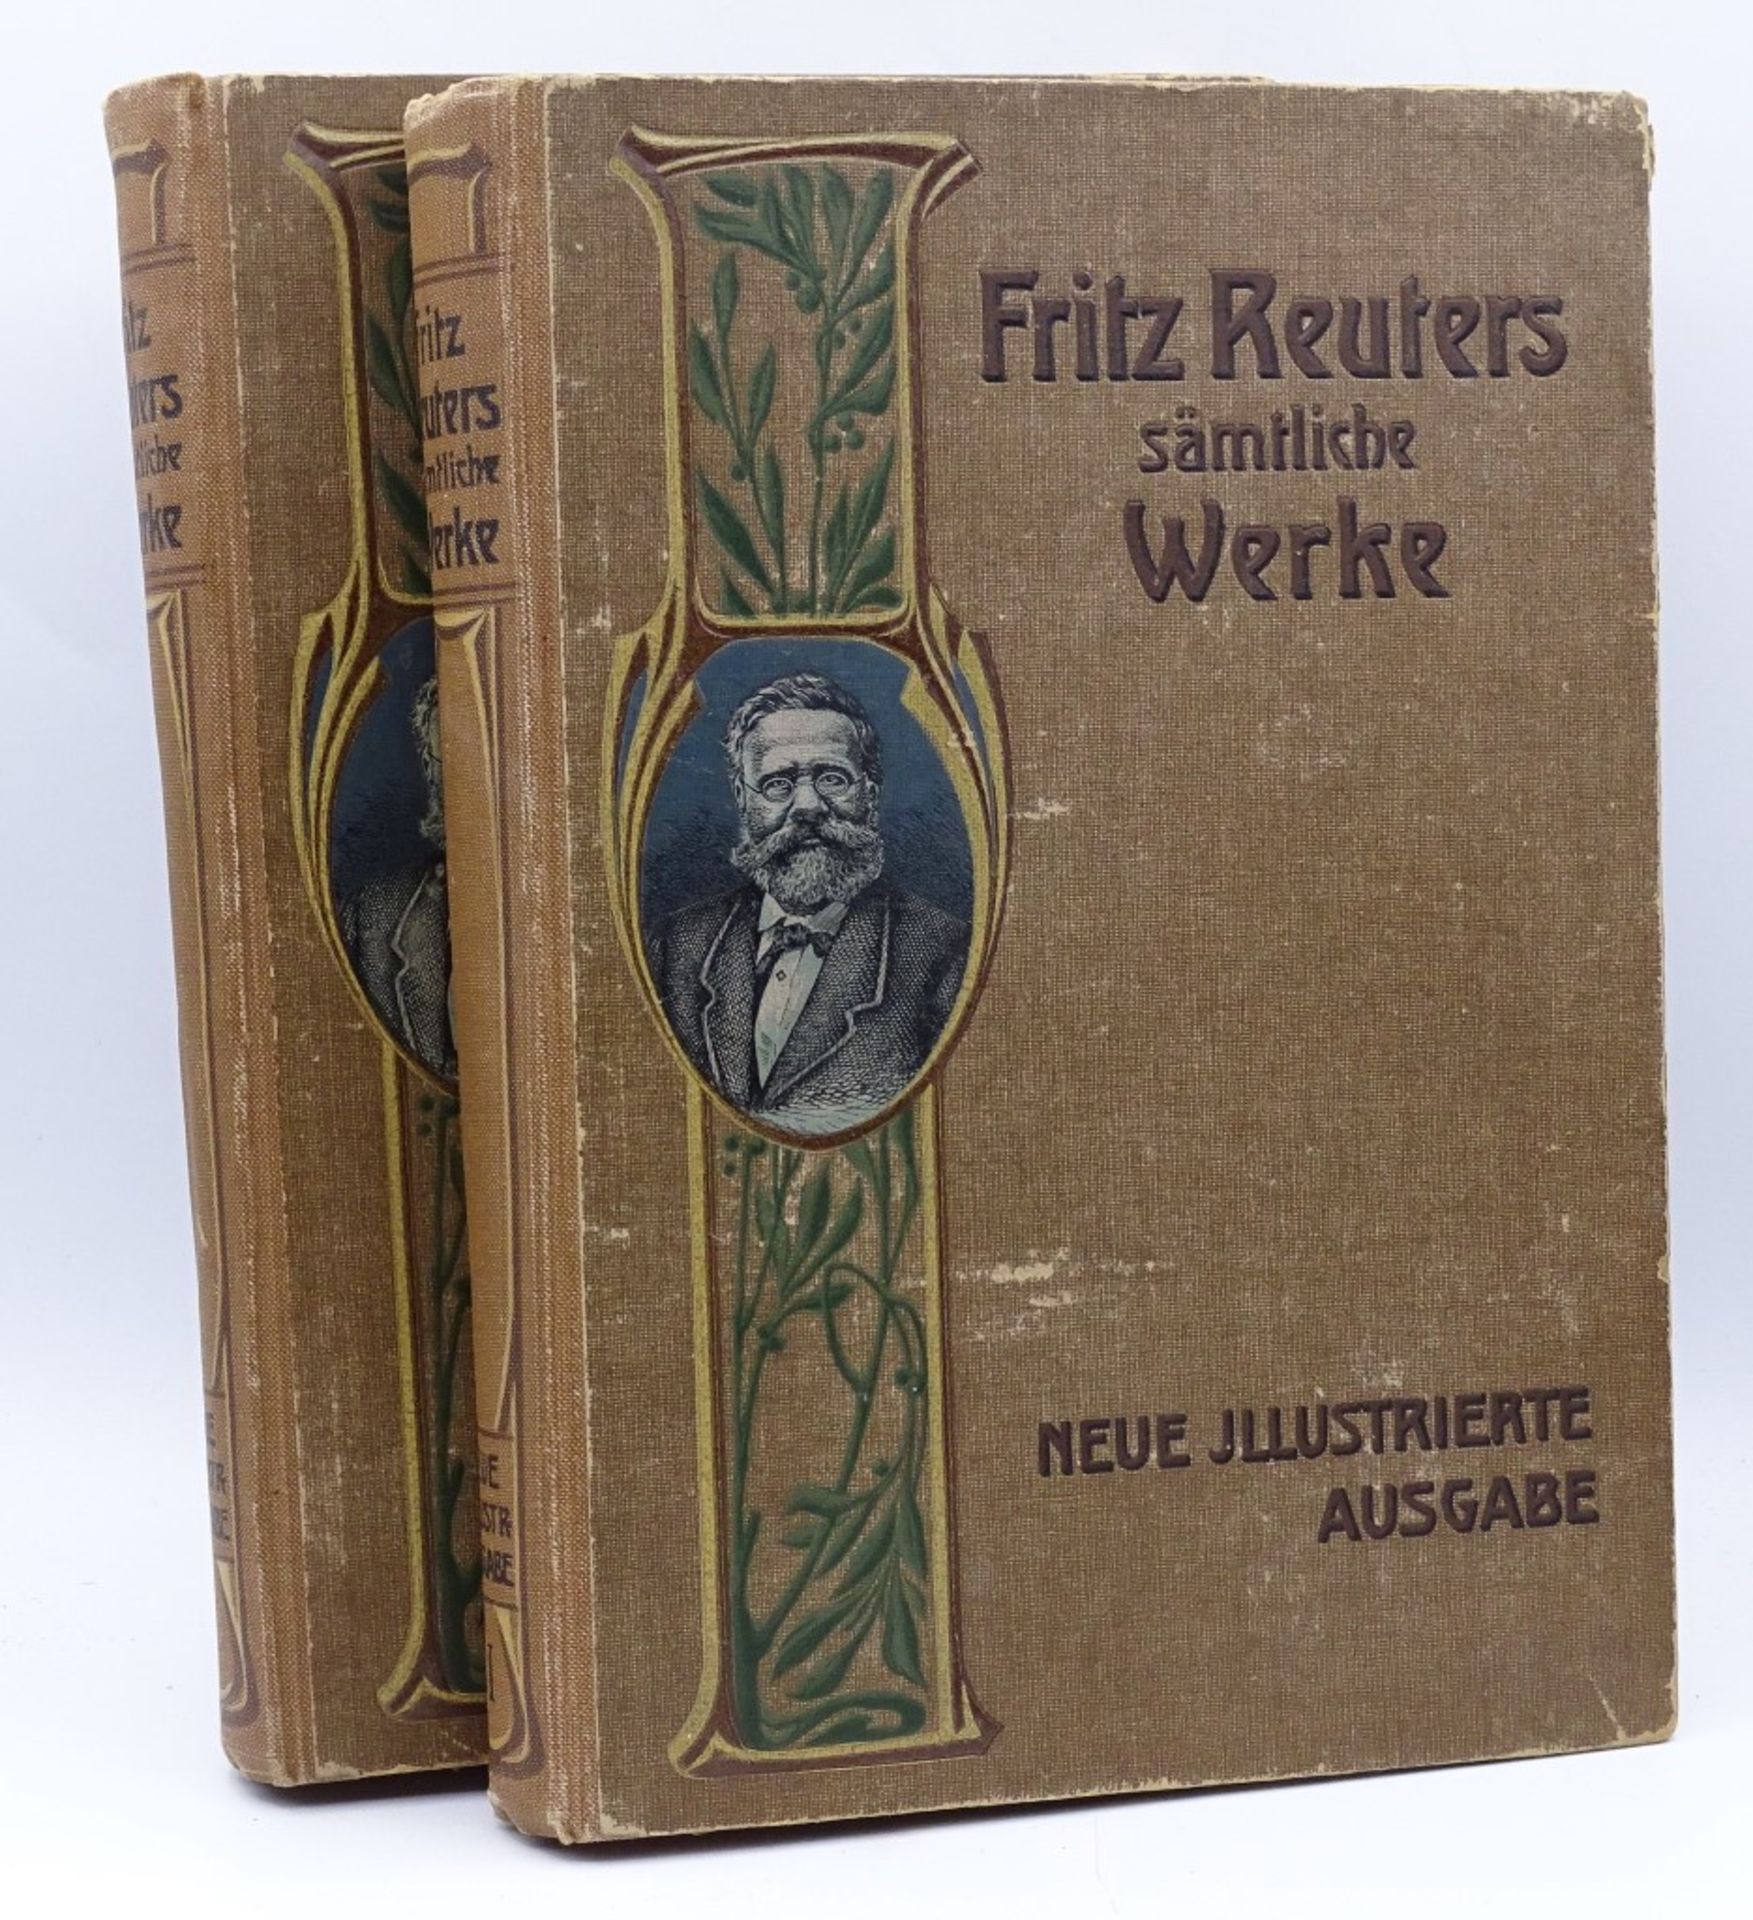 Fritz Reuters sämtliche Werke, Band 1+